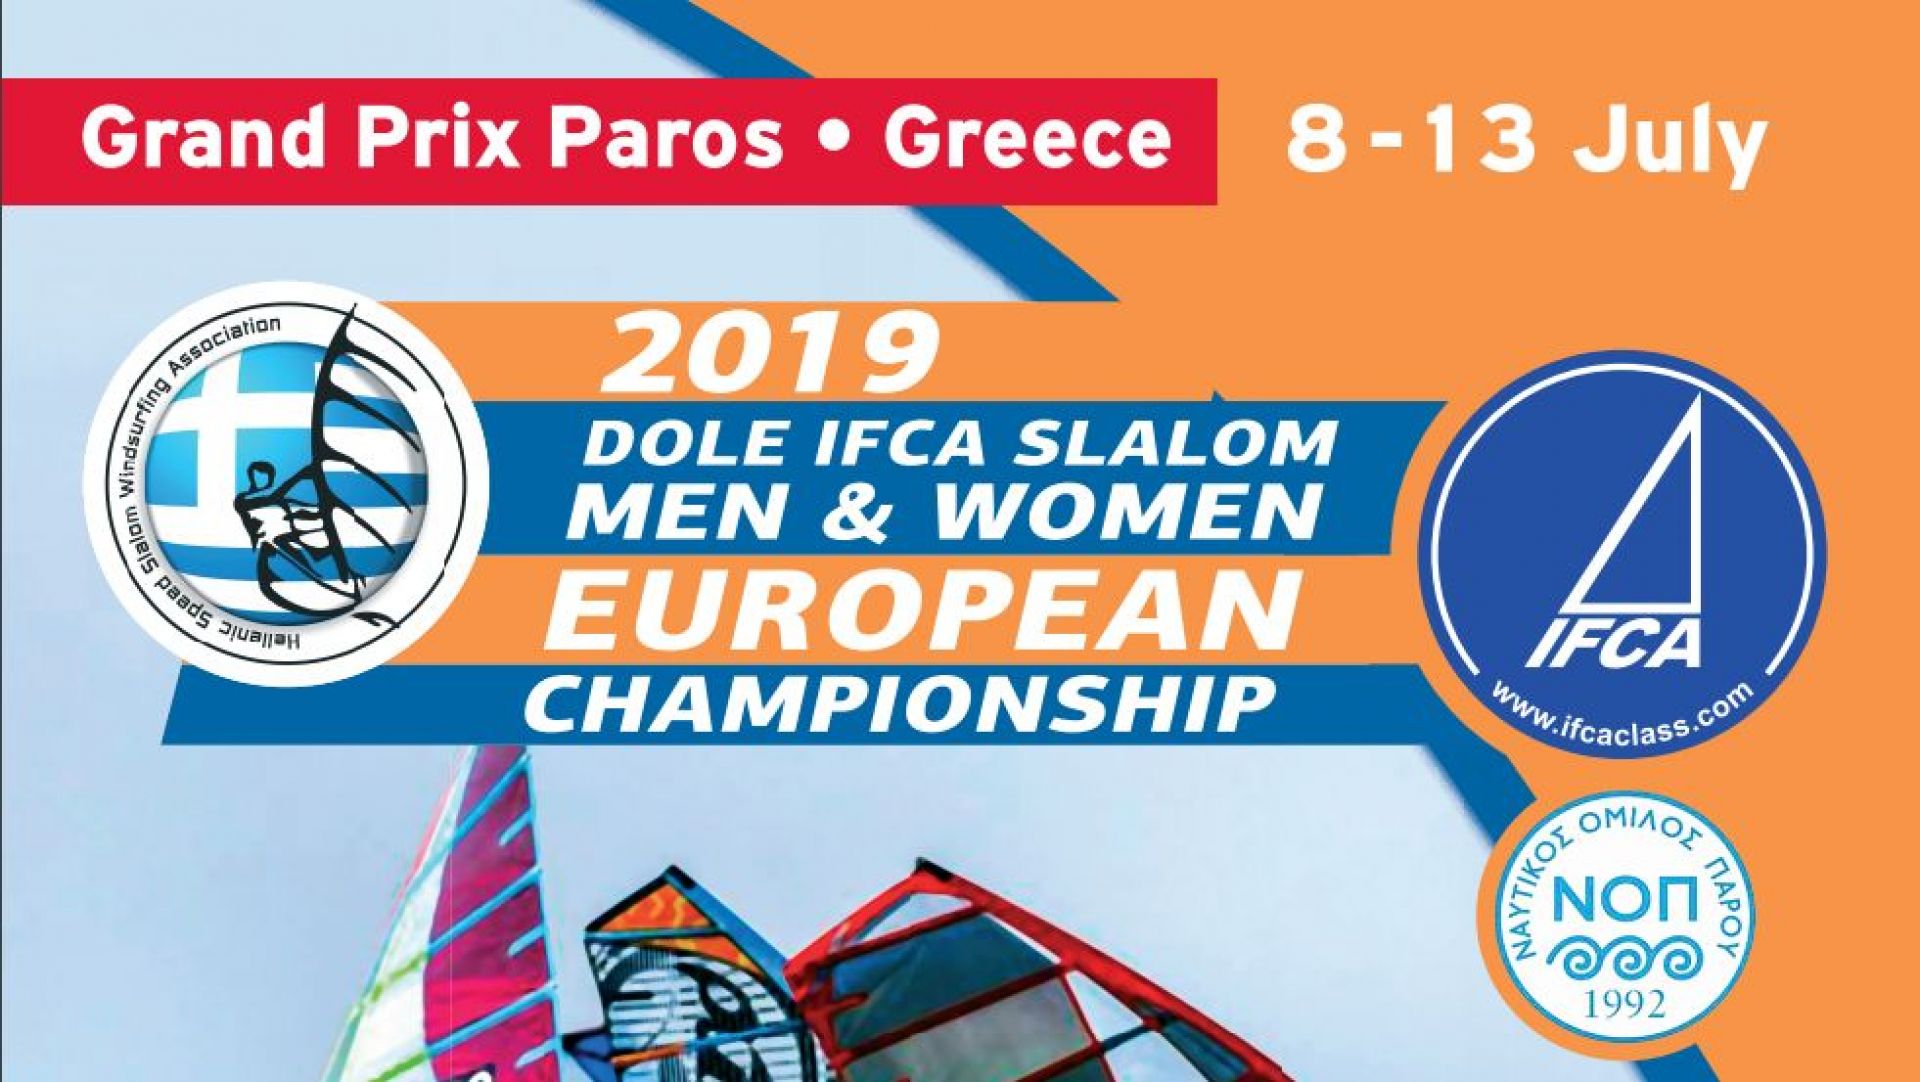 Την Δευτέρα 8/7 στην Πάρο η τελετή έναρξης του Πανευρωπαϊκού Πρωταθλήματος Σλάλομ Ανδρών-Γυναικών